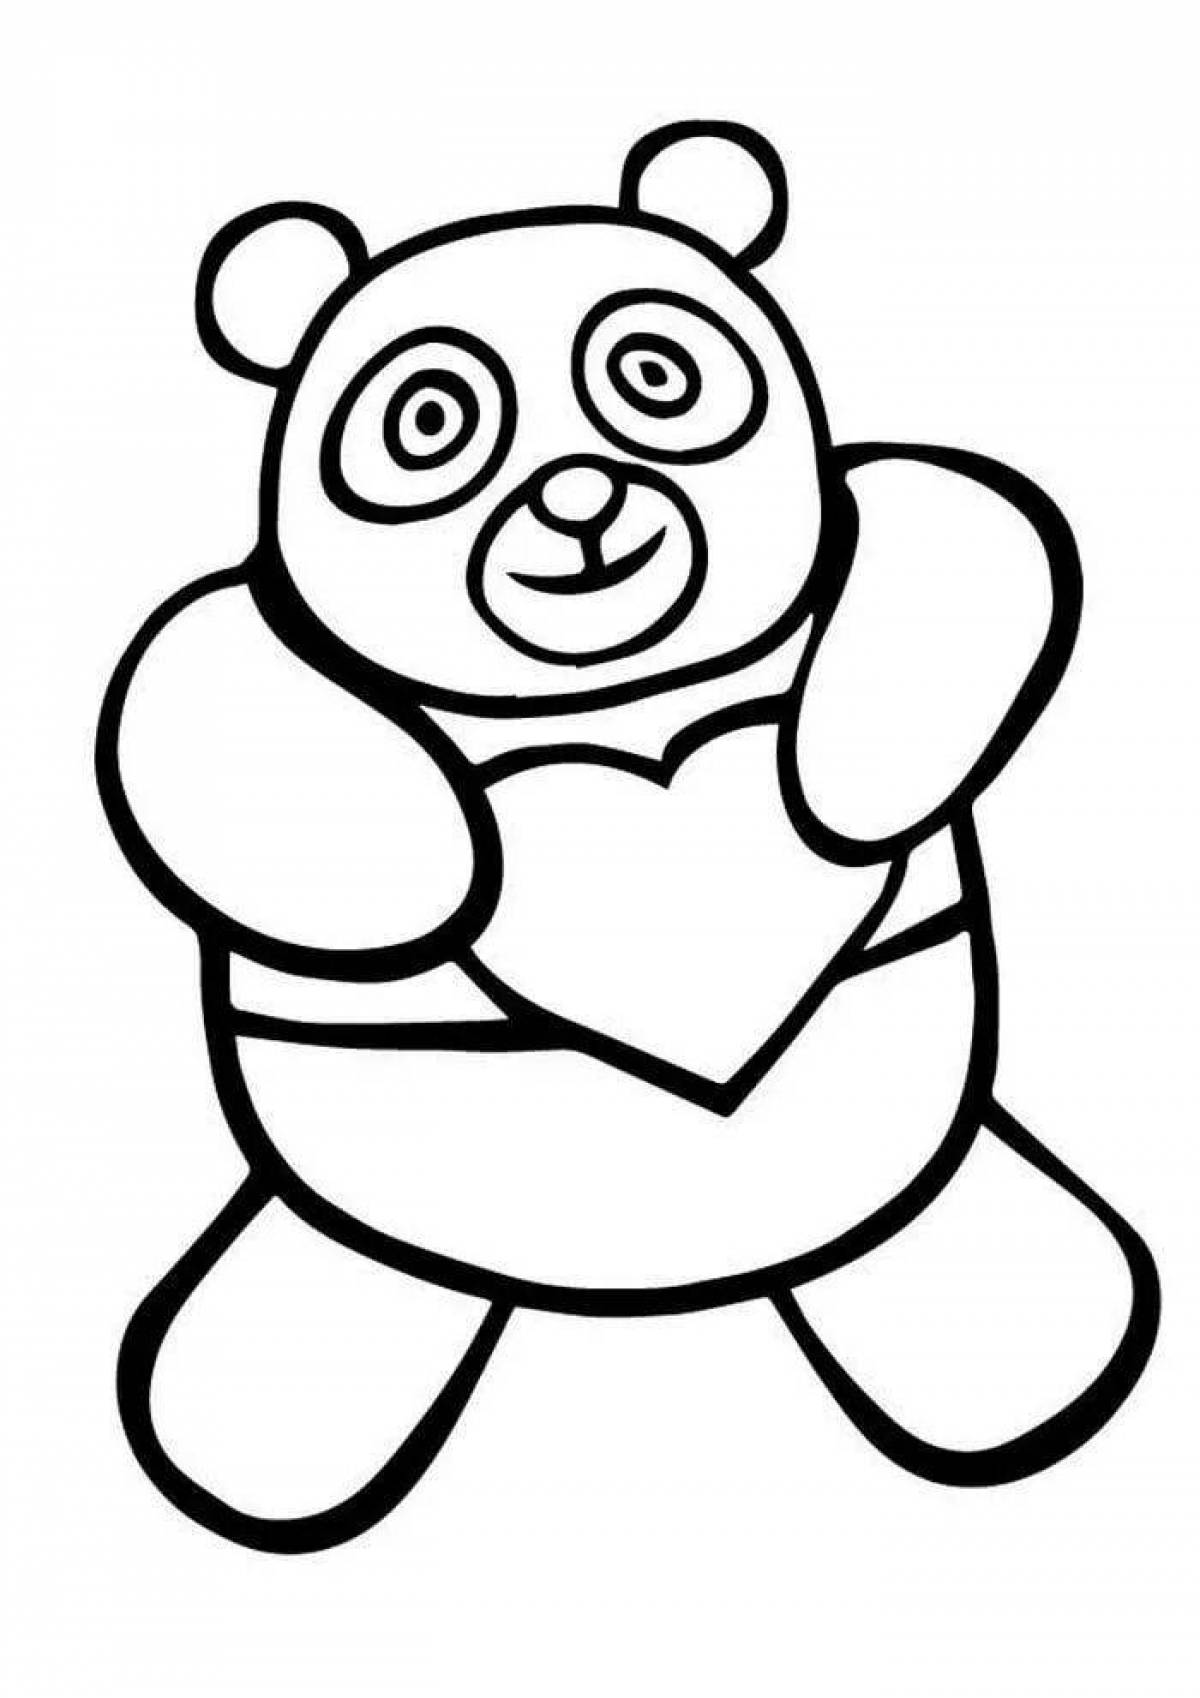 Увлекательная раскраска панда для детей